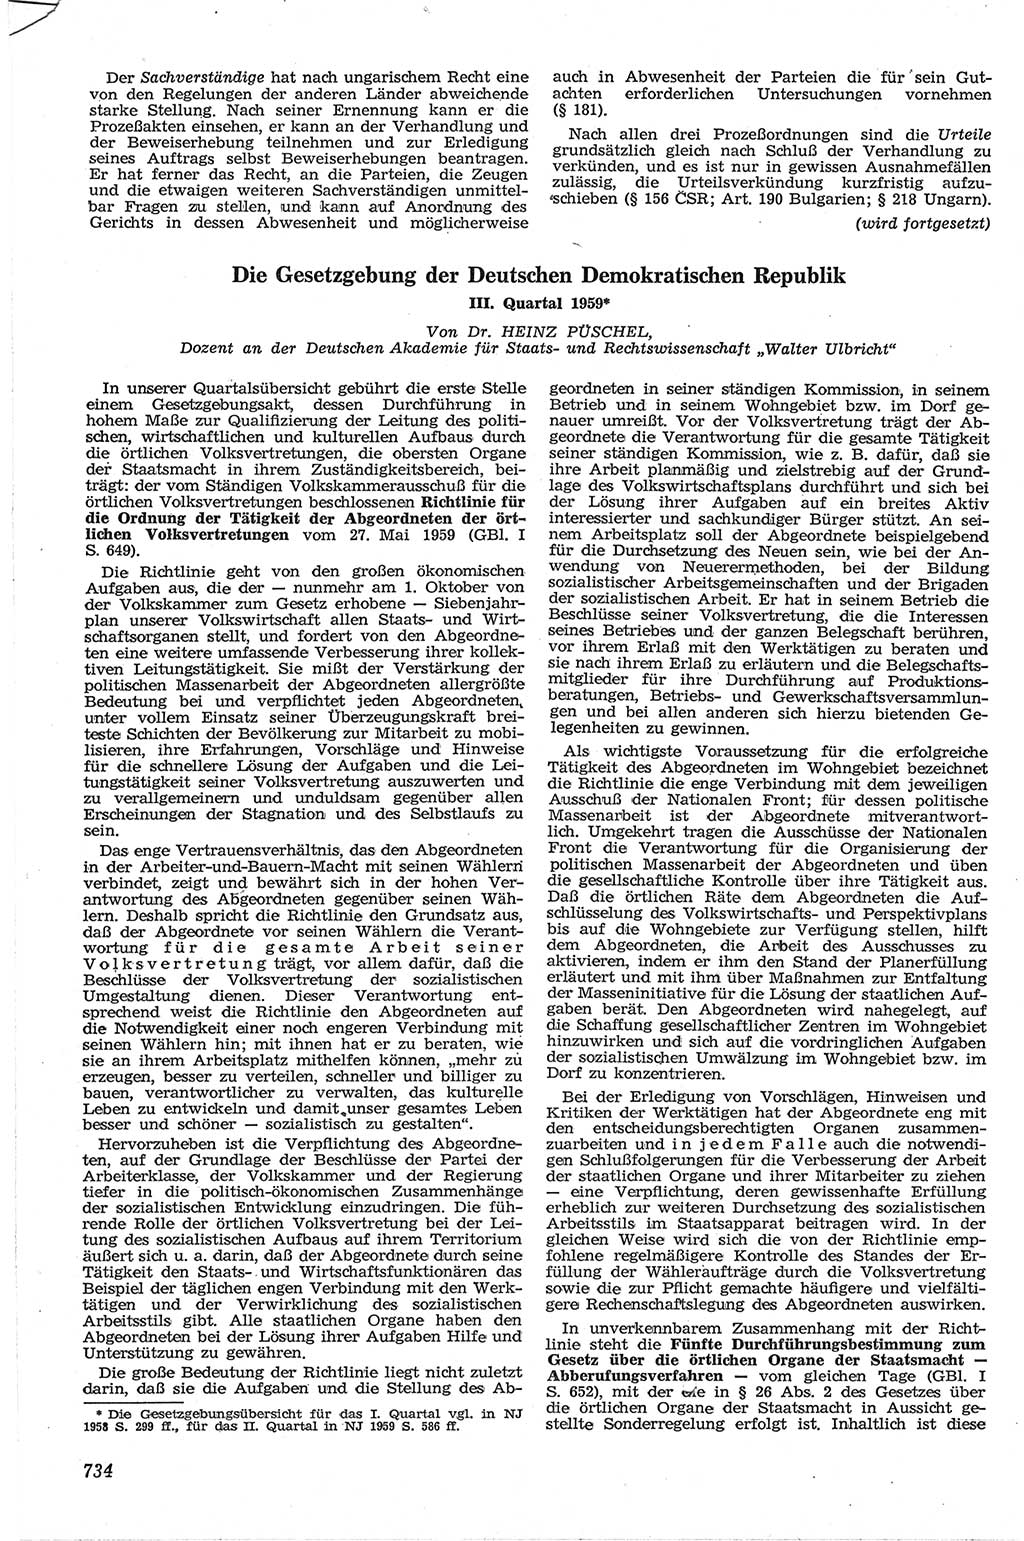 Neue Justiz (NJ), Zeitschrift für Recht und Rechtswissenschaft [Deutsche Demokratische Republik (DDR)], 13. Jahrgang 1959, Seite 734 (NJ DDR 1959, S. 734)